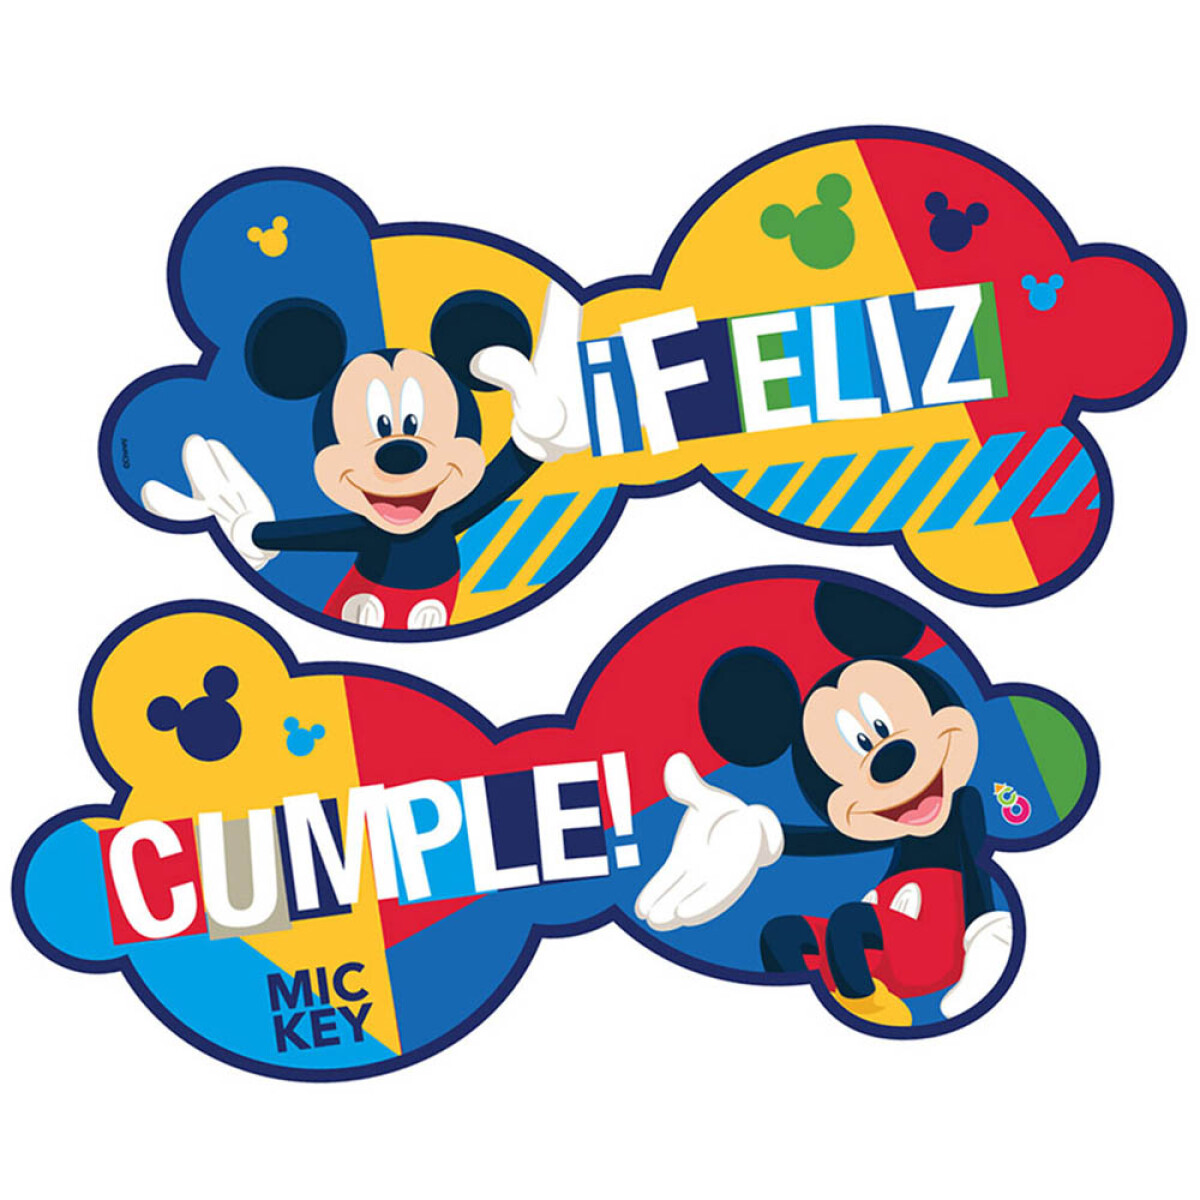 Cotillón Banderín Cartel Feliz Cumple 184 cm - Mickey 